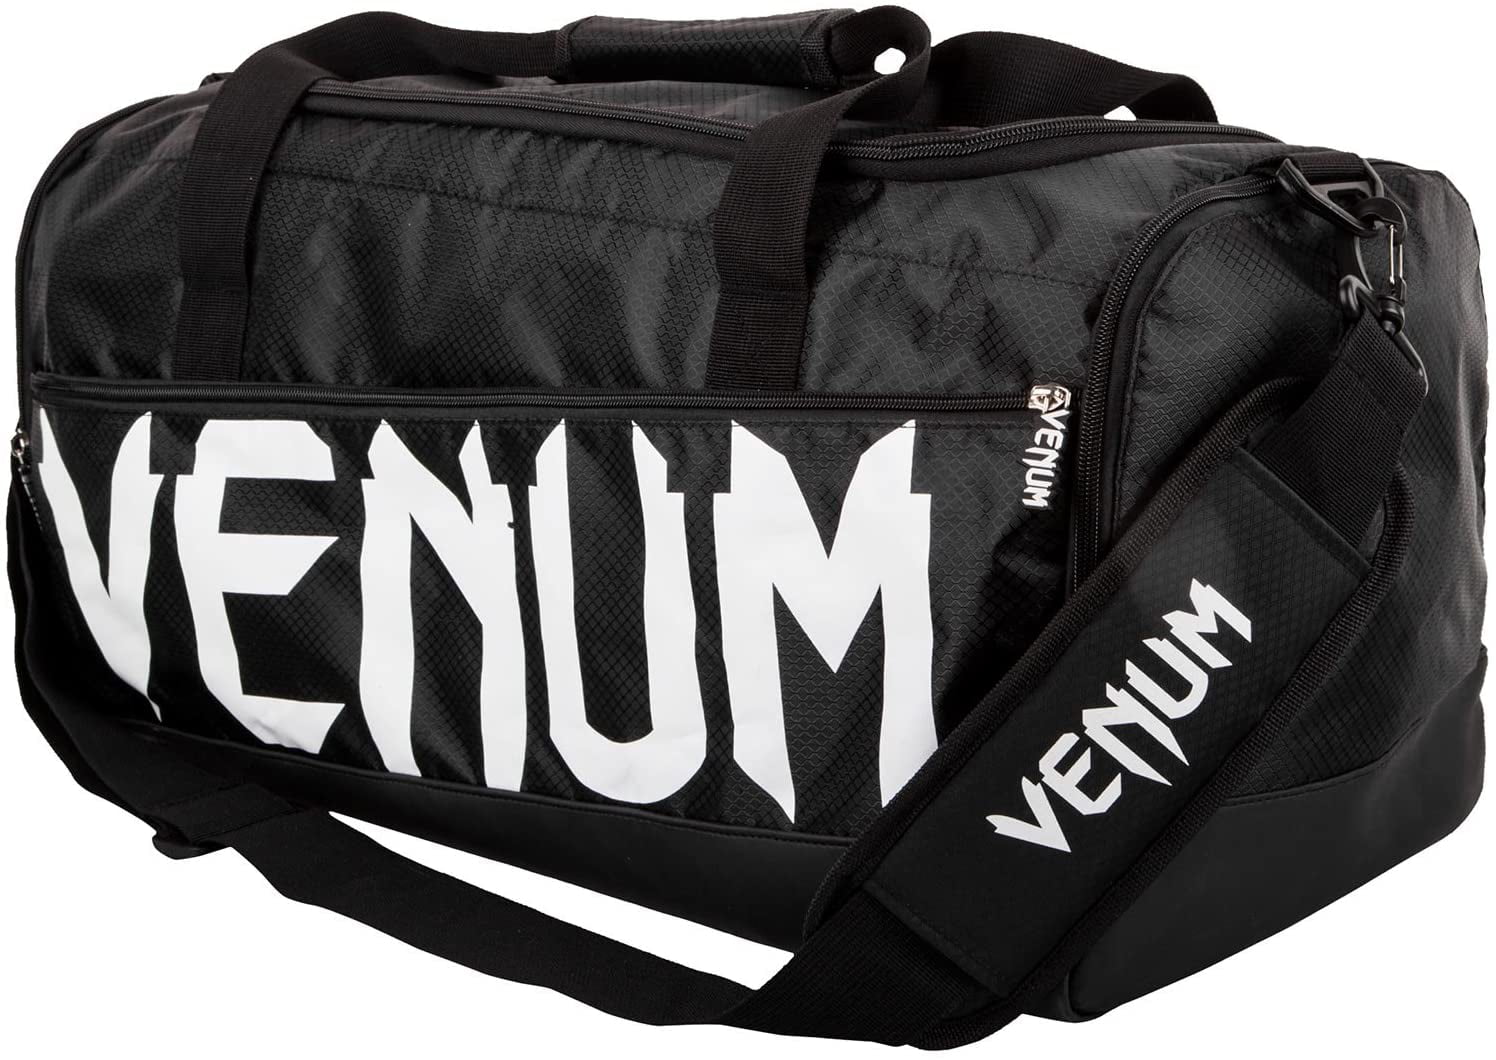 White/Camo Venum Sparring Sport Bag 